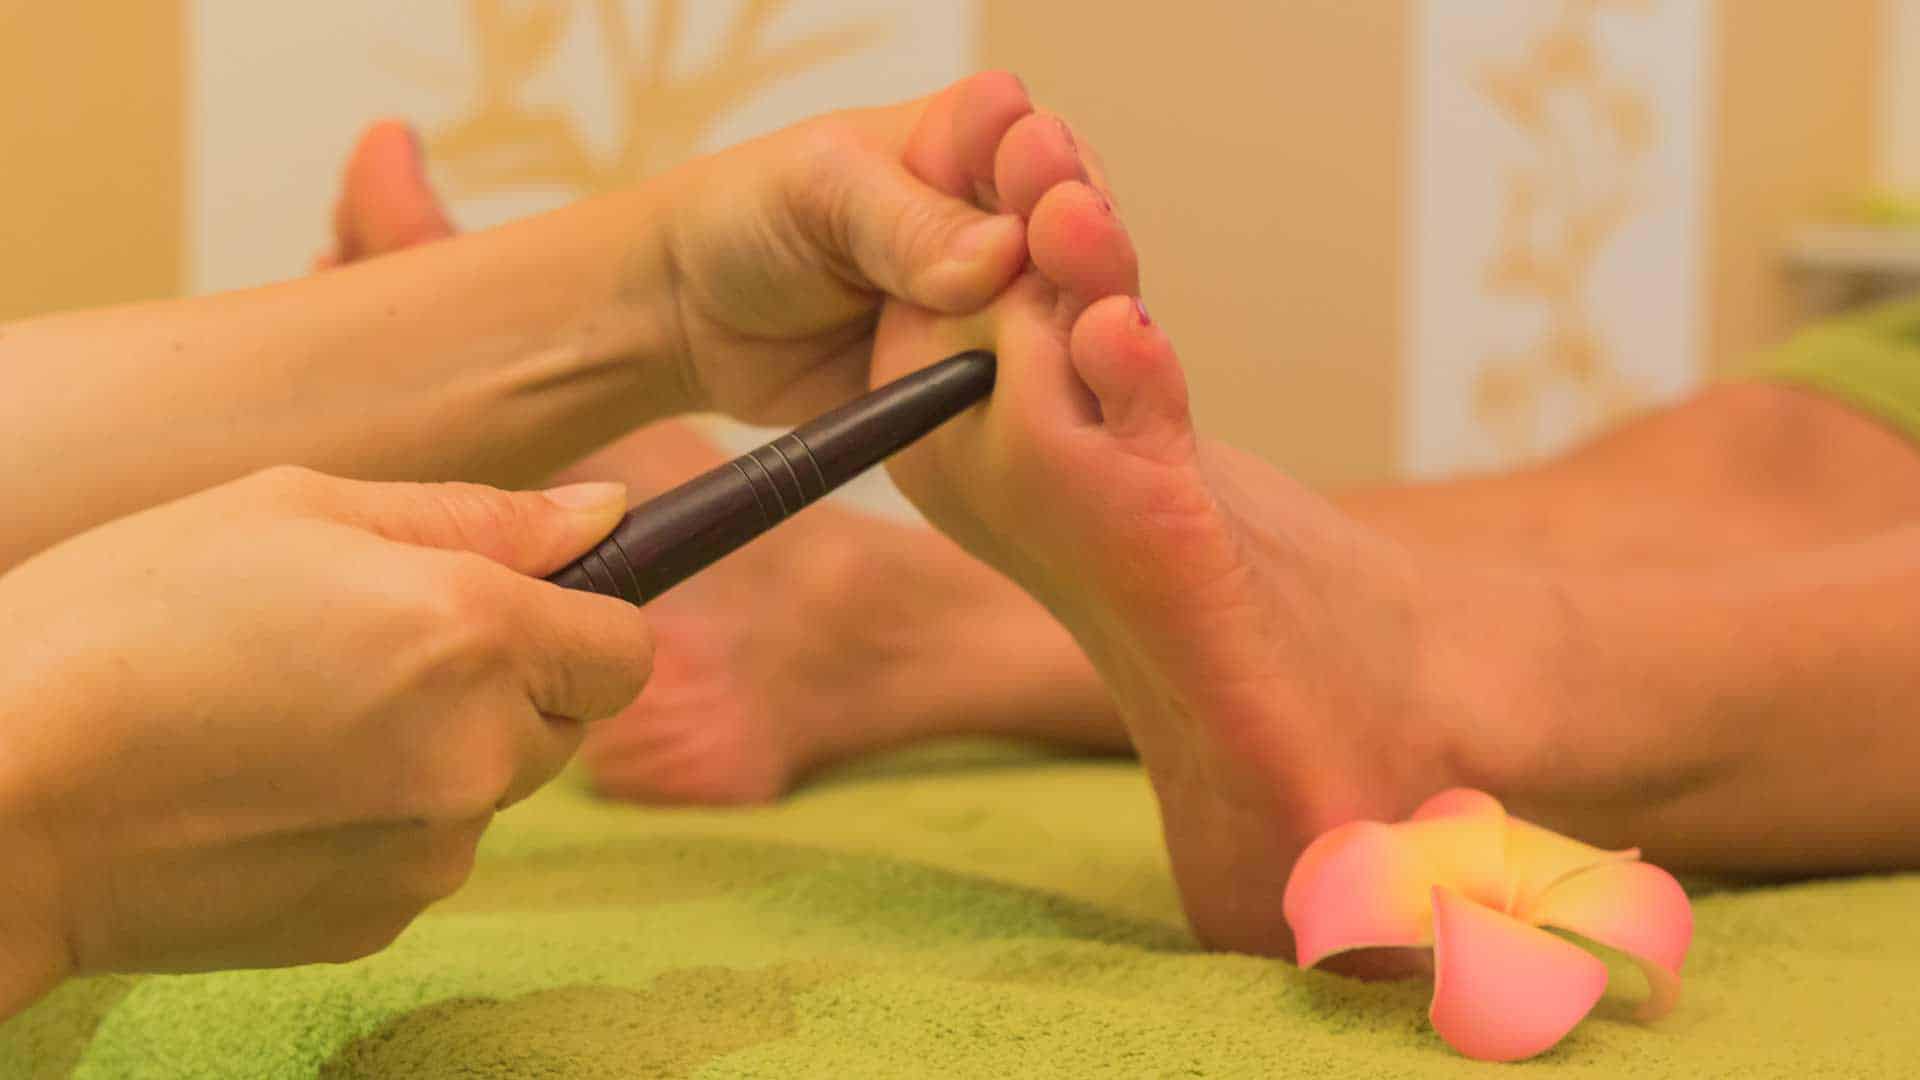 Während der Fußmassage wird der Fuß mit dem Massage-Stick an der Sohle massiert.